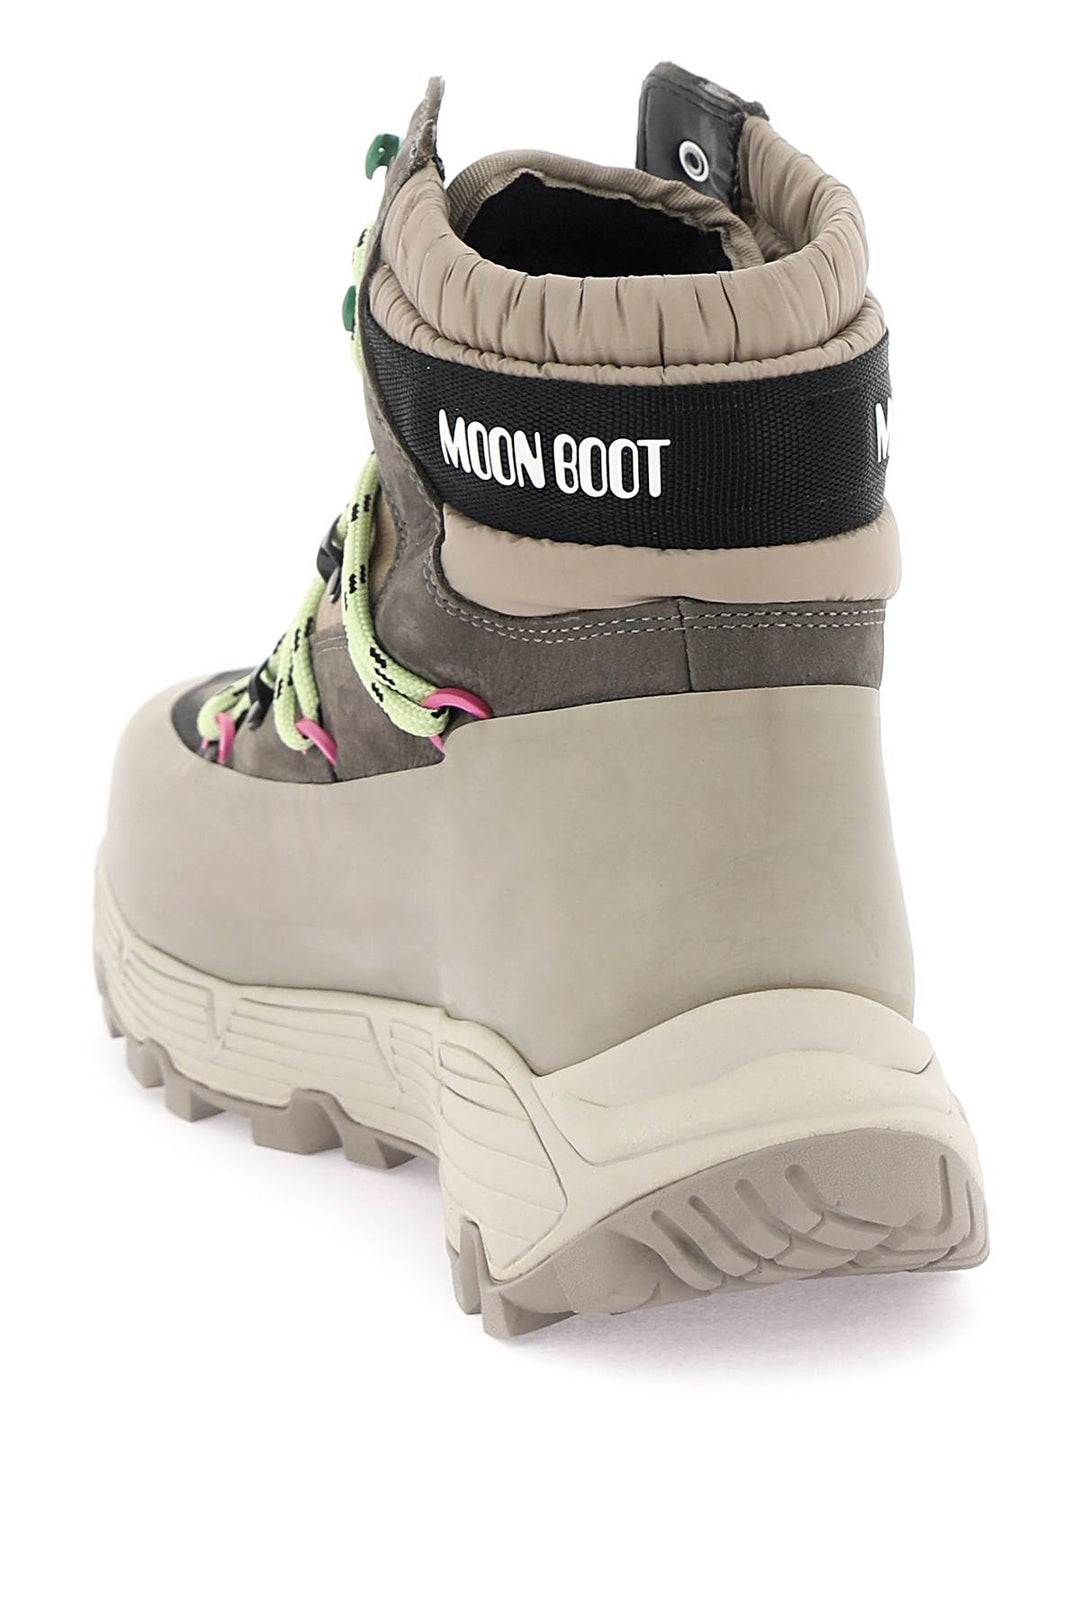 Moon Boot Tech Hiker Hiking Boots   Beige